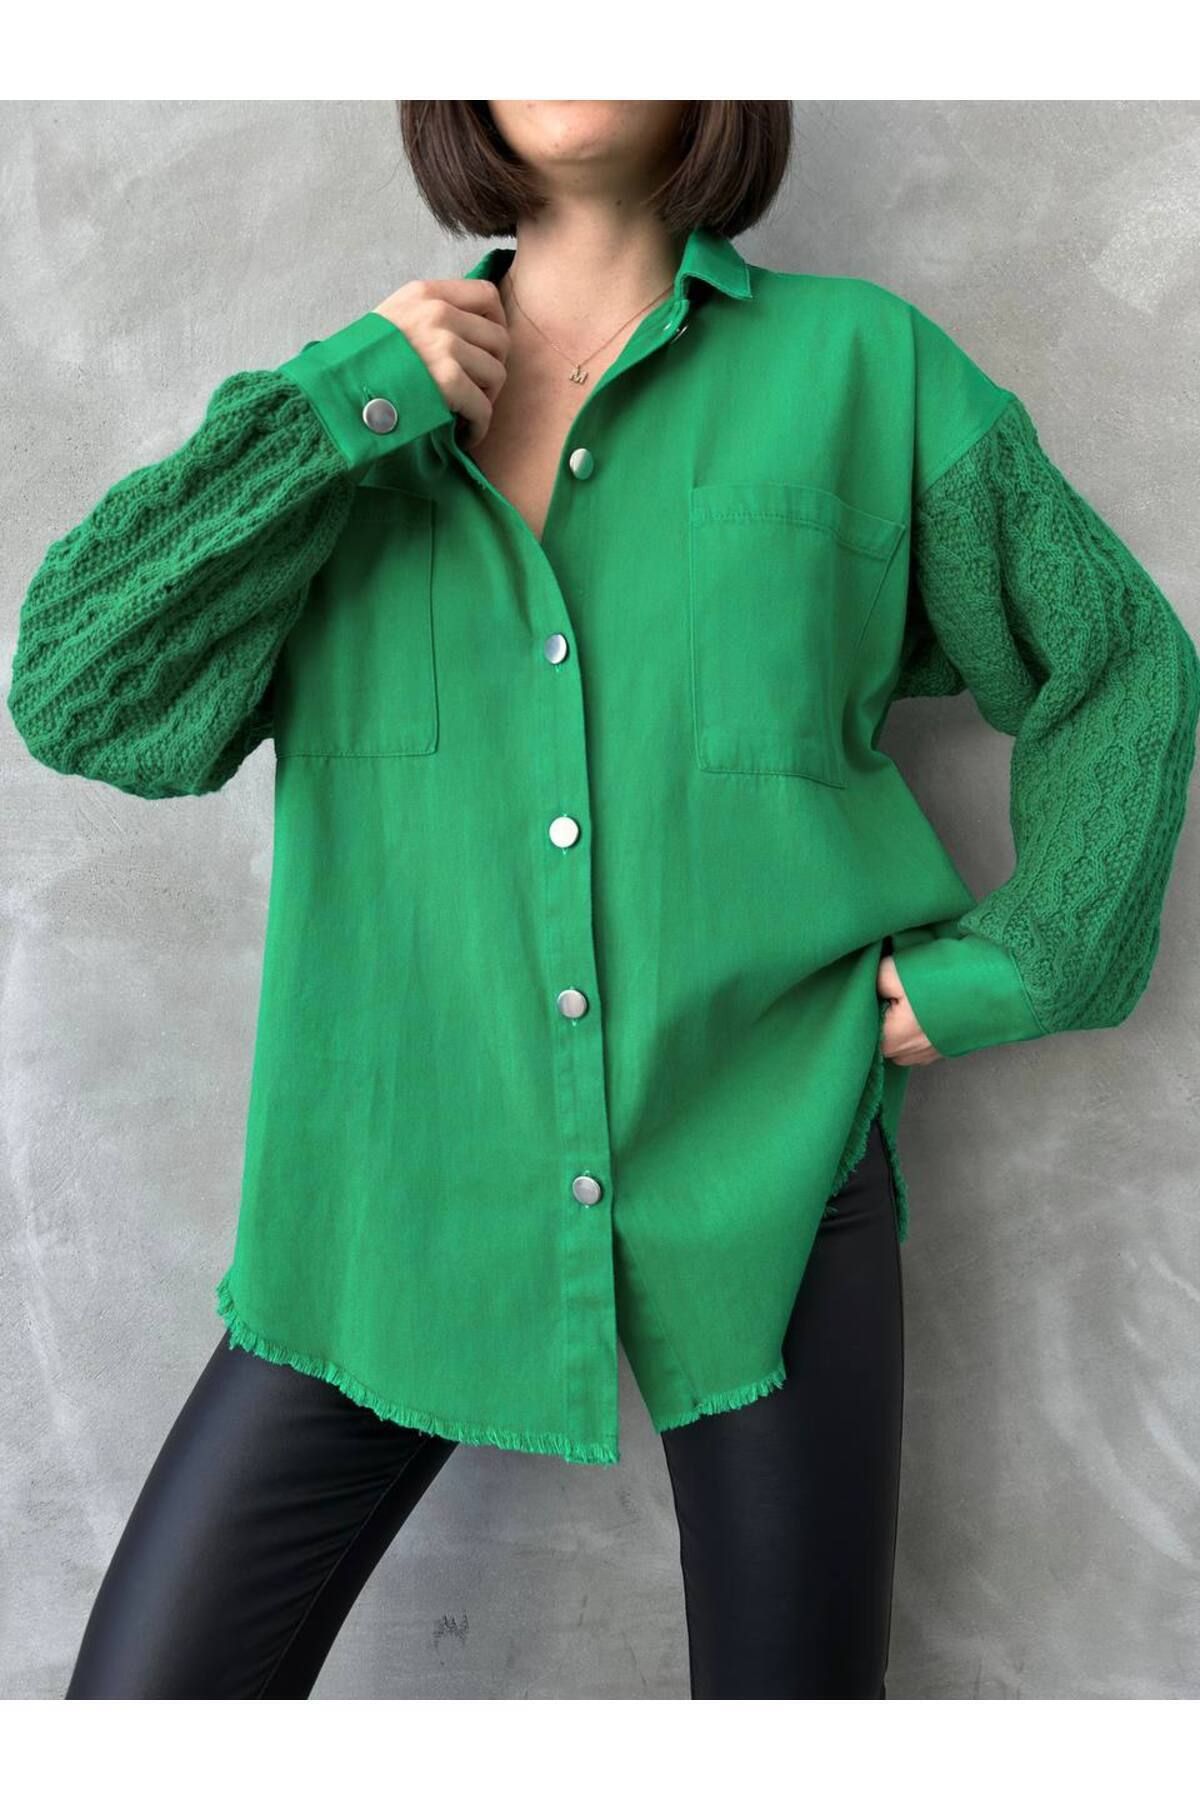 DuSiMoDa Kadın Yeşil Gömlek Ceket Kolları Triko Detaylı Çift Cepli Etek Uçları Püsküllü Demir Düğme Detaylı